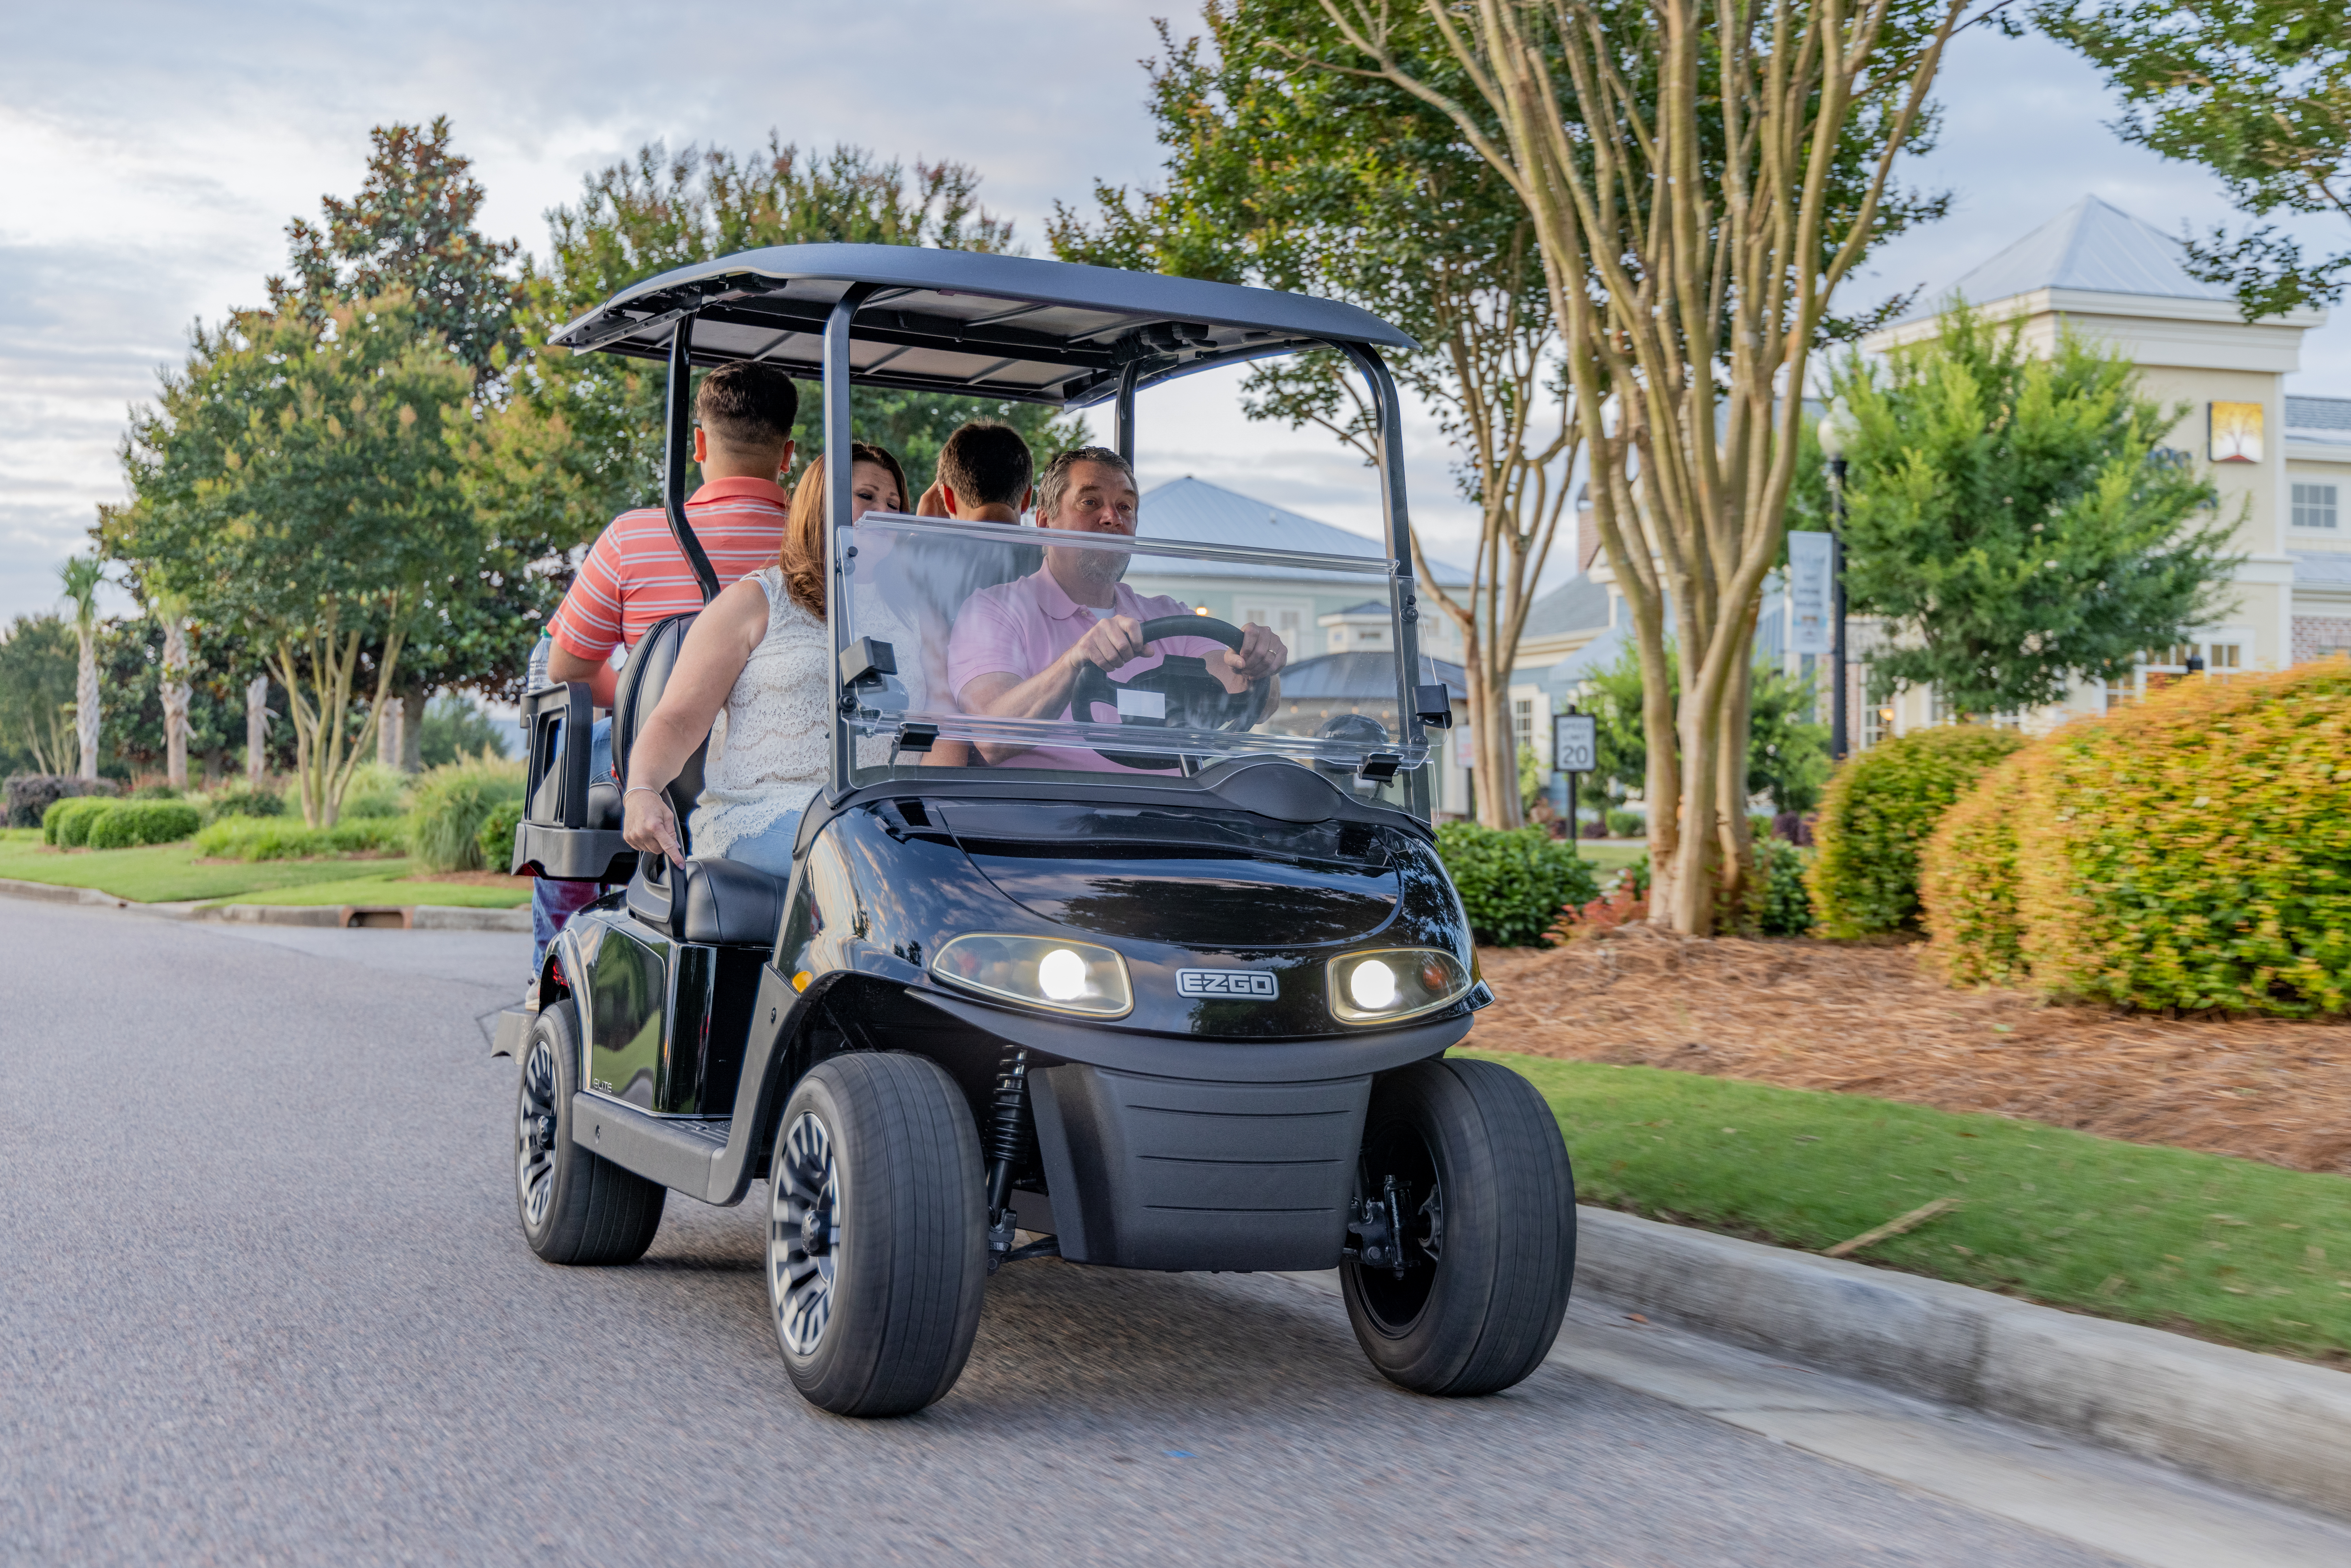 Family riding E-Z-GO golf cart